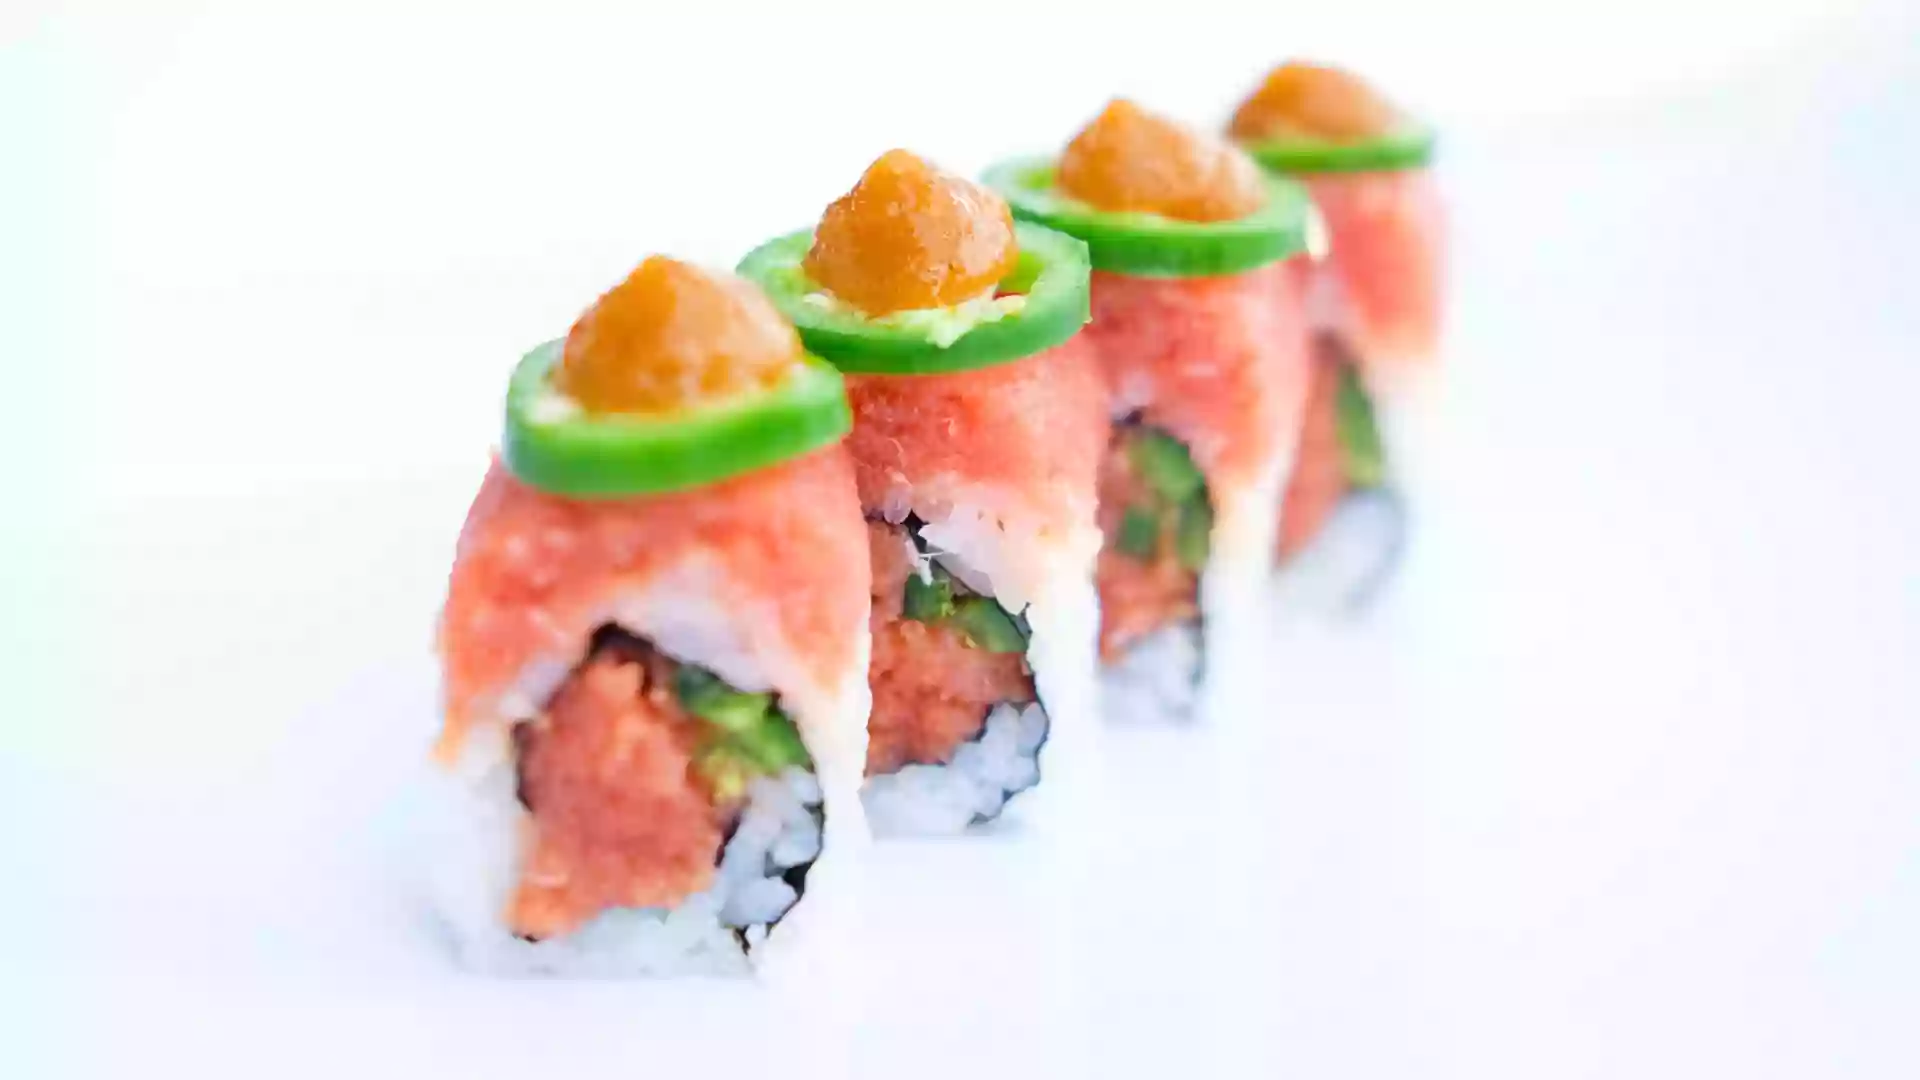 Awi Sushi